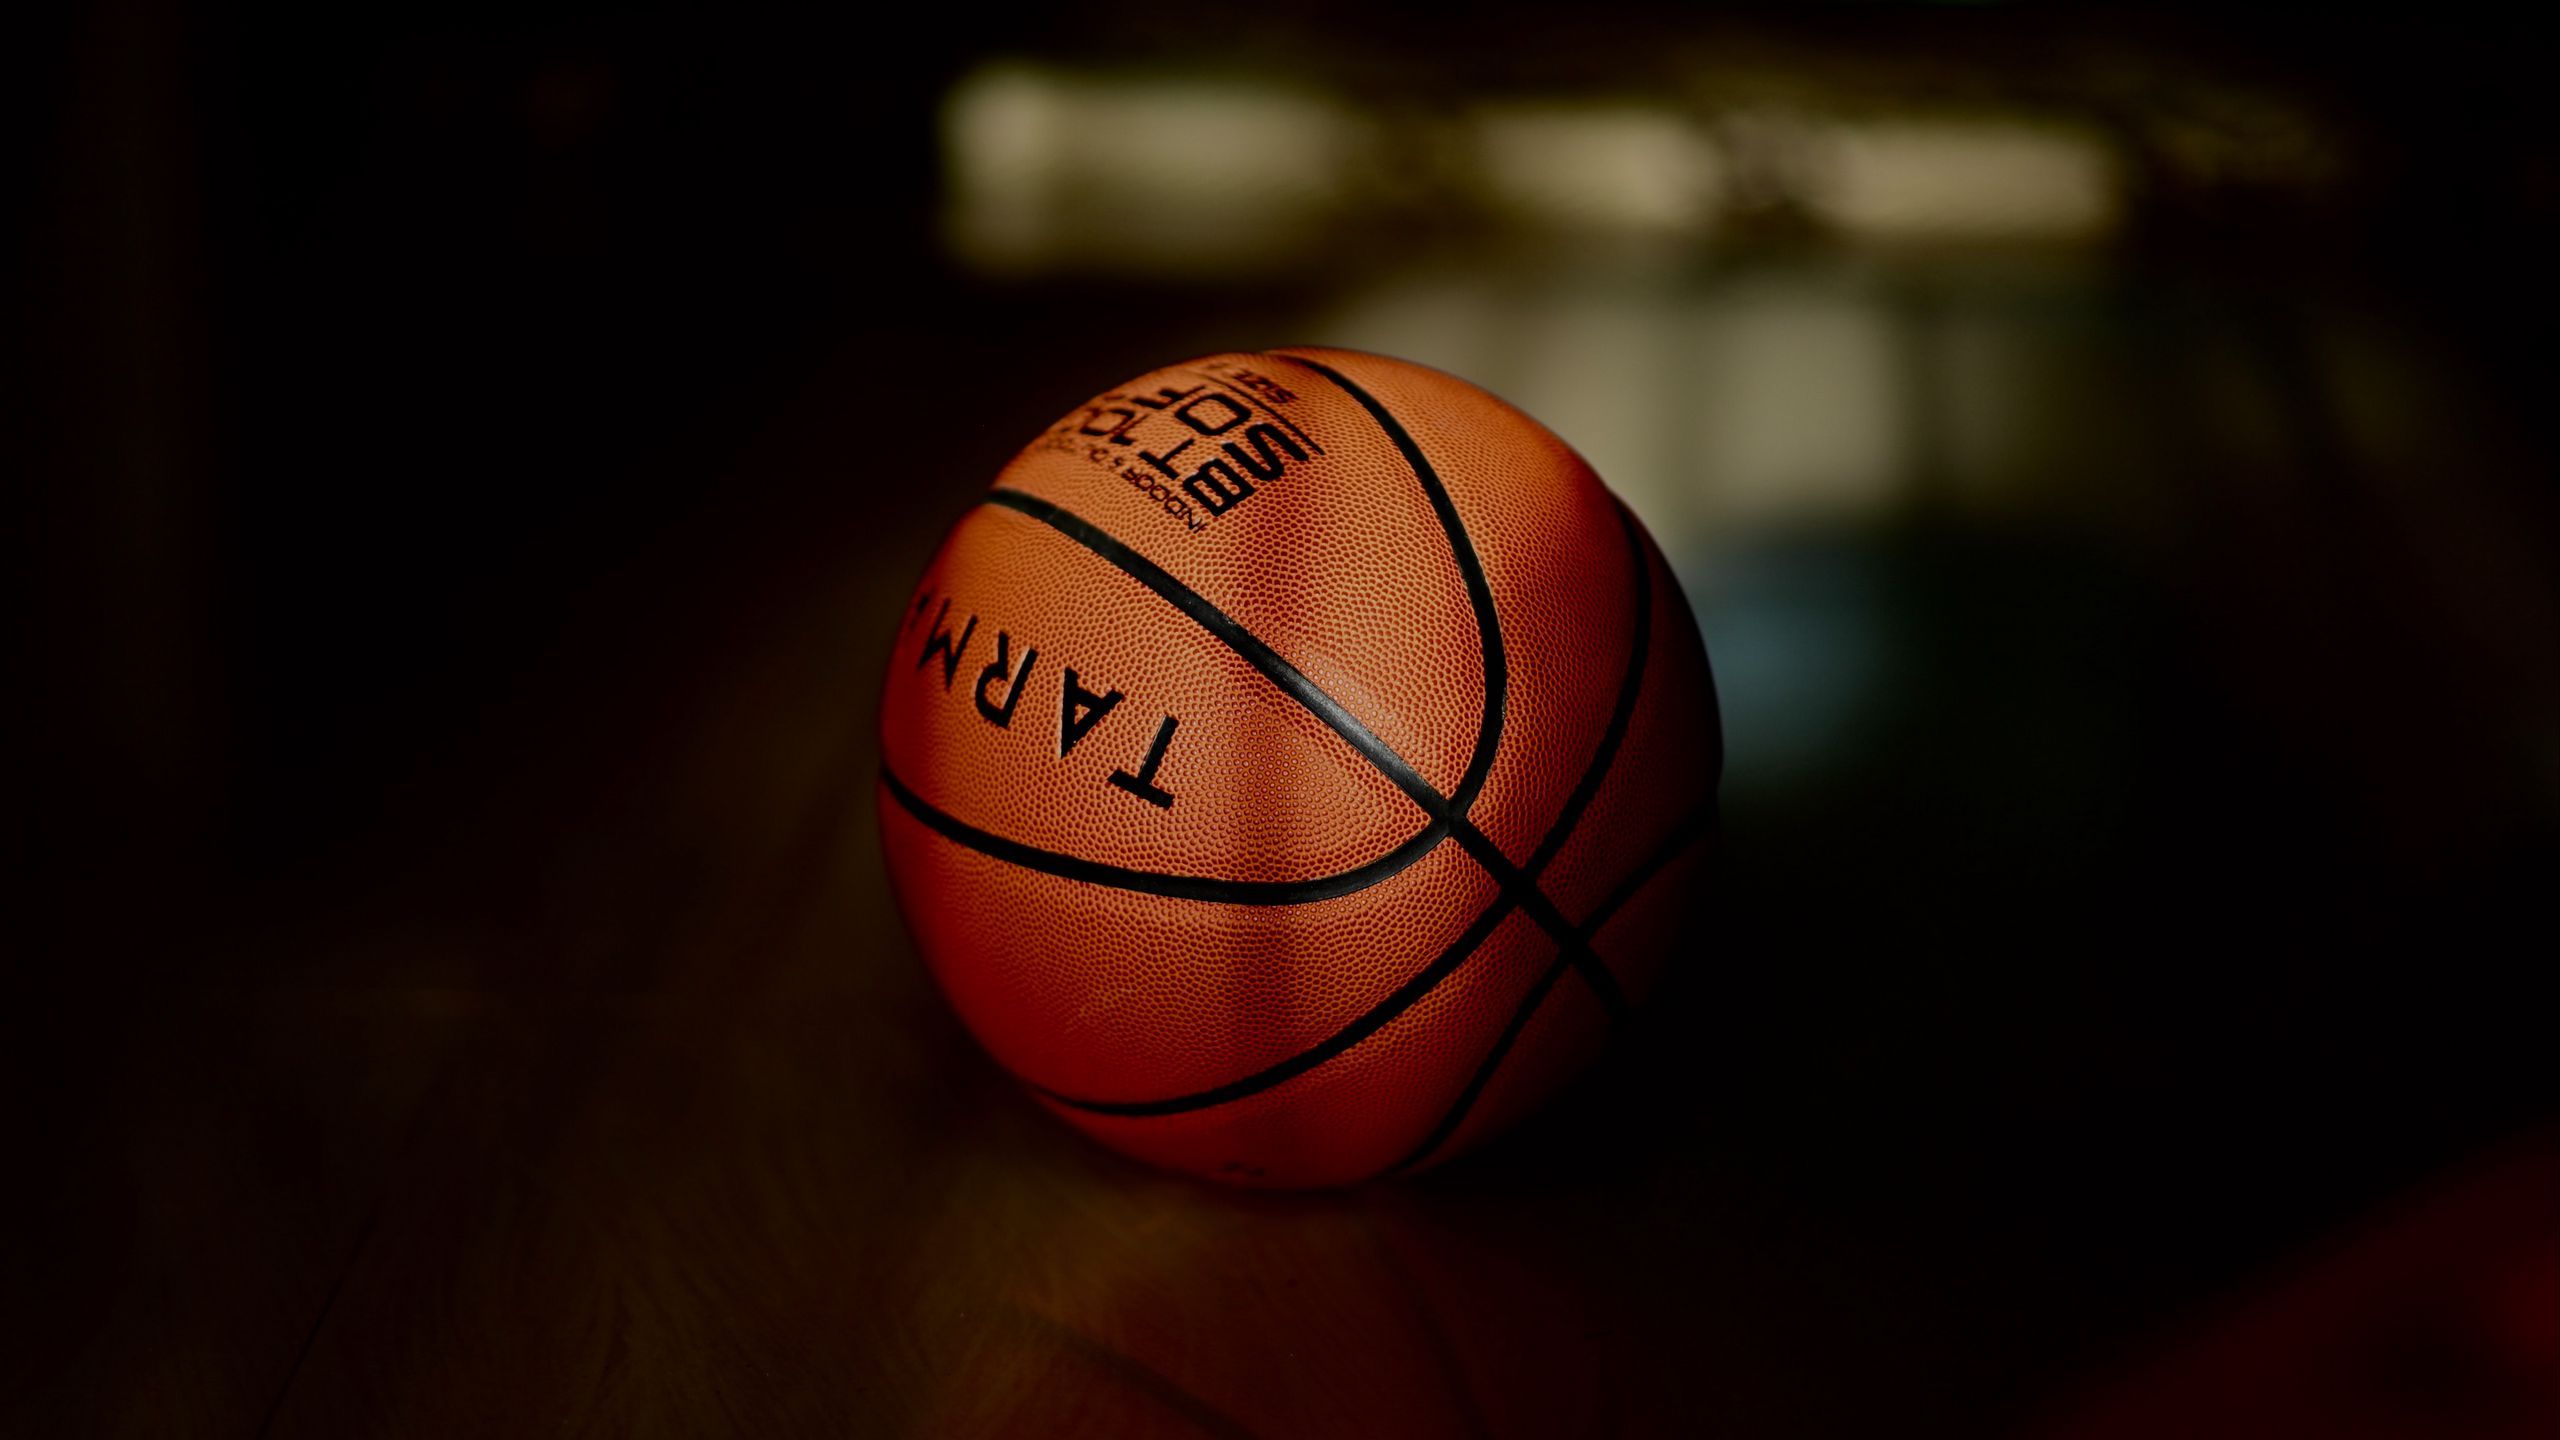 Download wallpaper 2560x1440 basketball, basketball ball, ball, dark widescreen 16:9 HD background